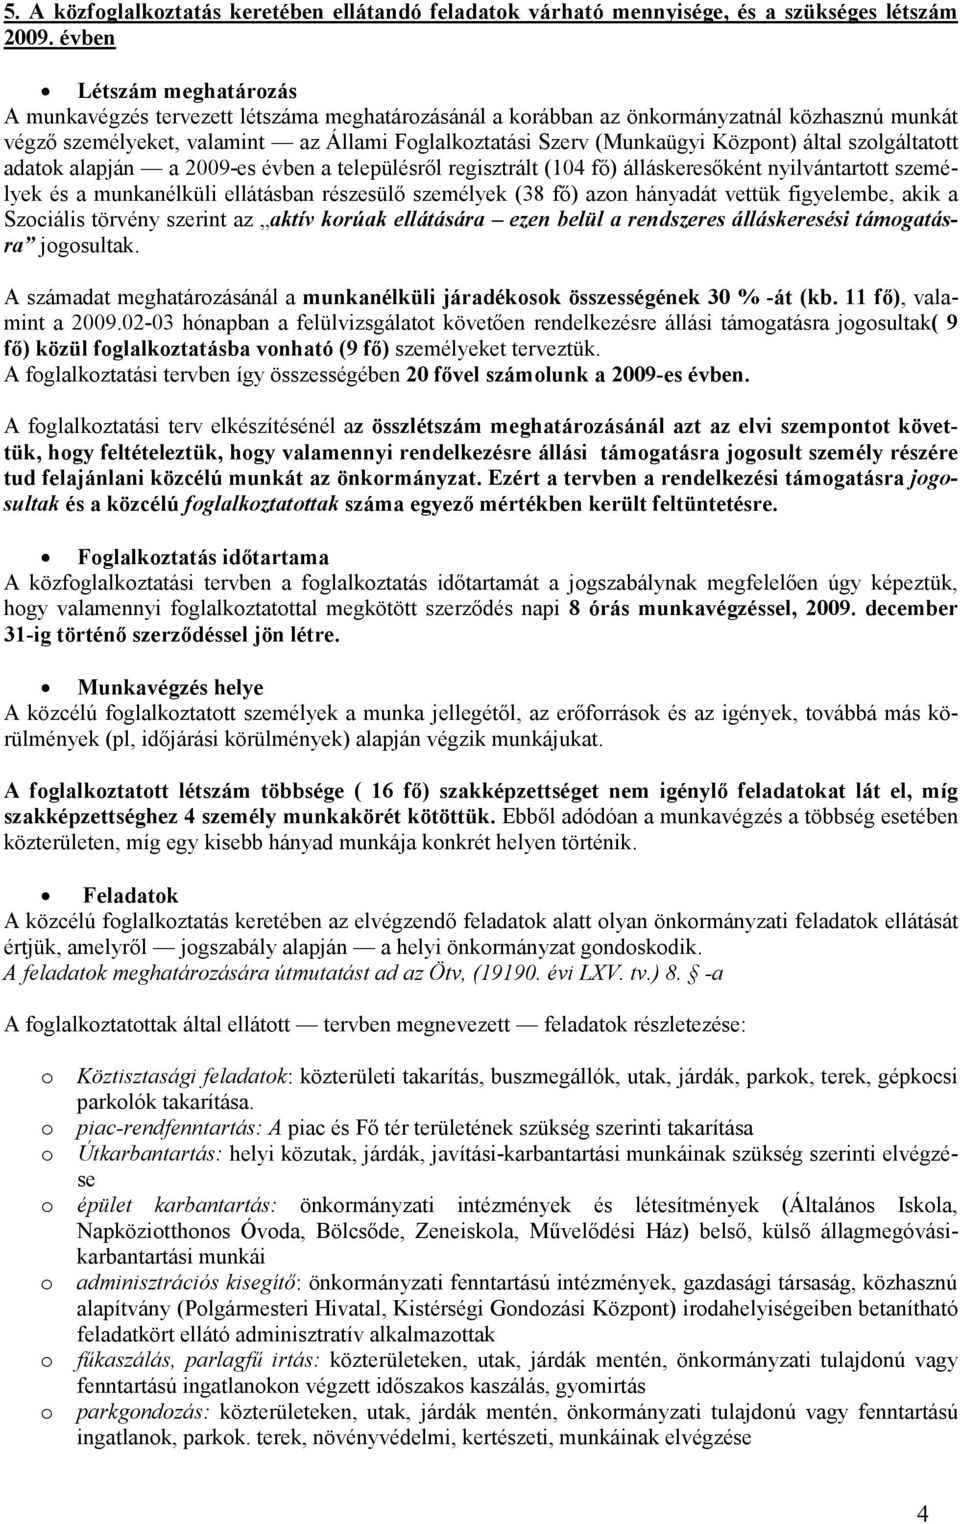 Központ) által szolgáltatott adatok alapján a 2009-es évben a településrıl regisztrált (104 fı) álláskeresıként nyilvántartott személyek és a munkanélküli ellátásban részesülı személyek (38 fı) azon